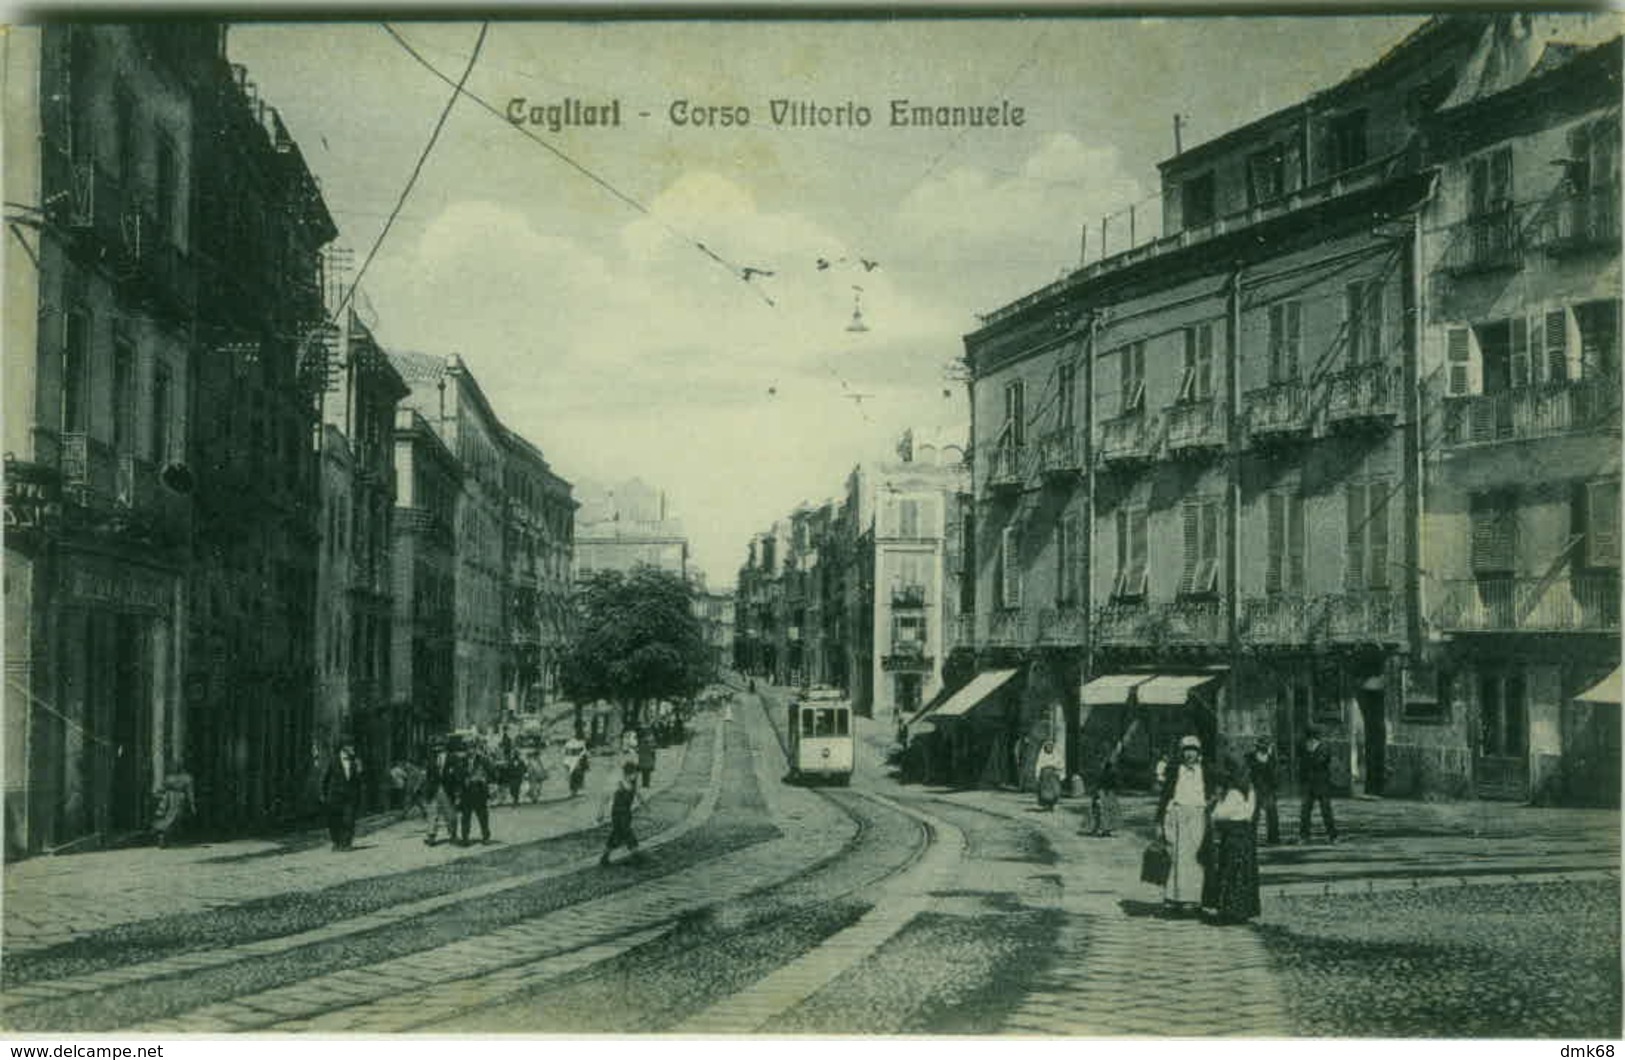 CAGLIARI - CORSO VITTORIO EMANUELE - TRAM - EDIZ. G. DESSI - 1920s (3242) - Cagliari